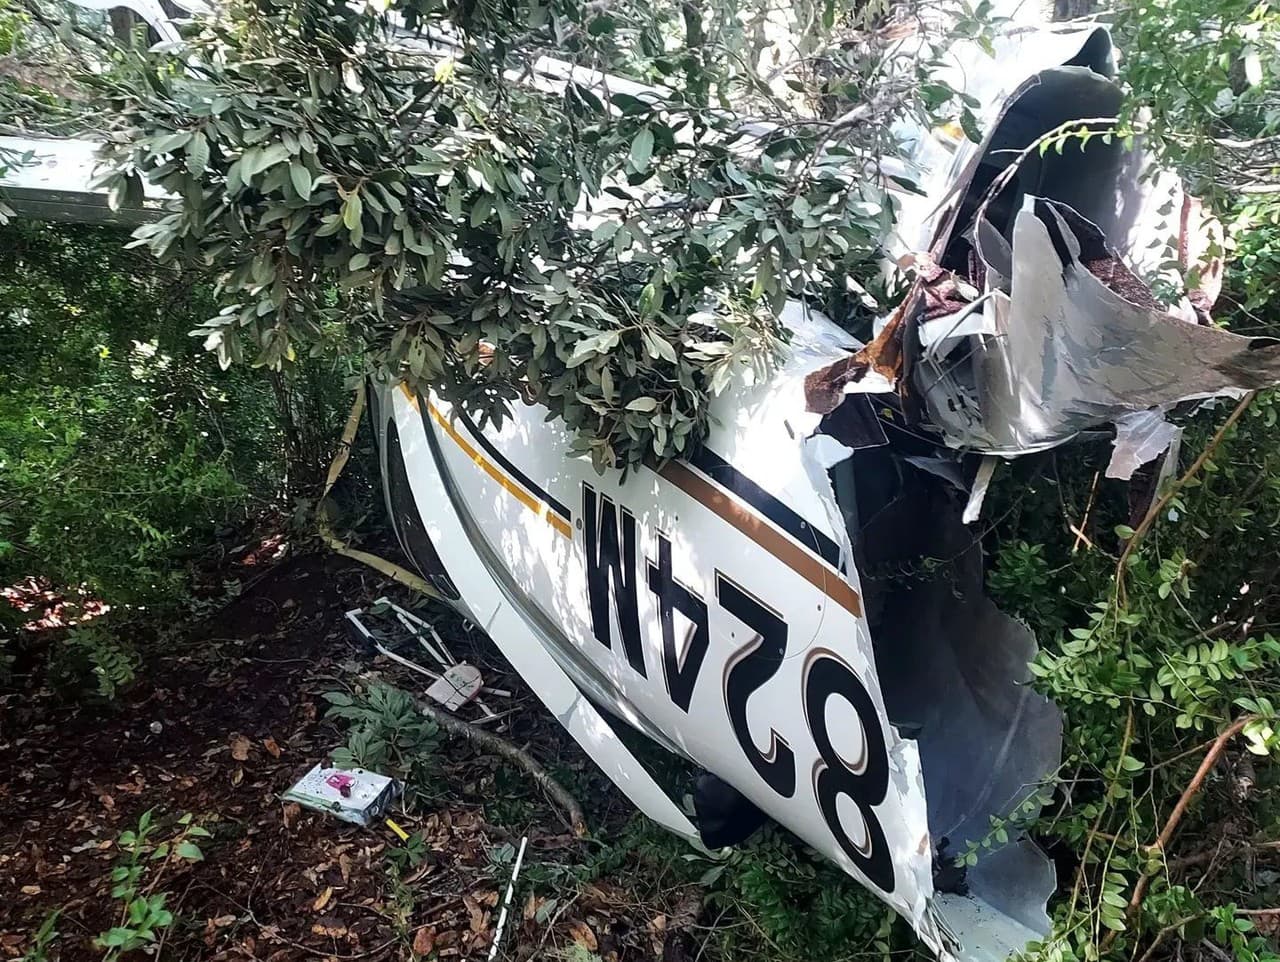 Manželia s dcérkou prežili haváriu lietadla.